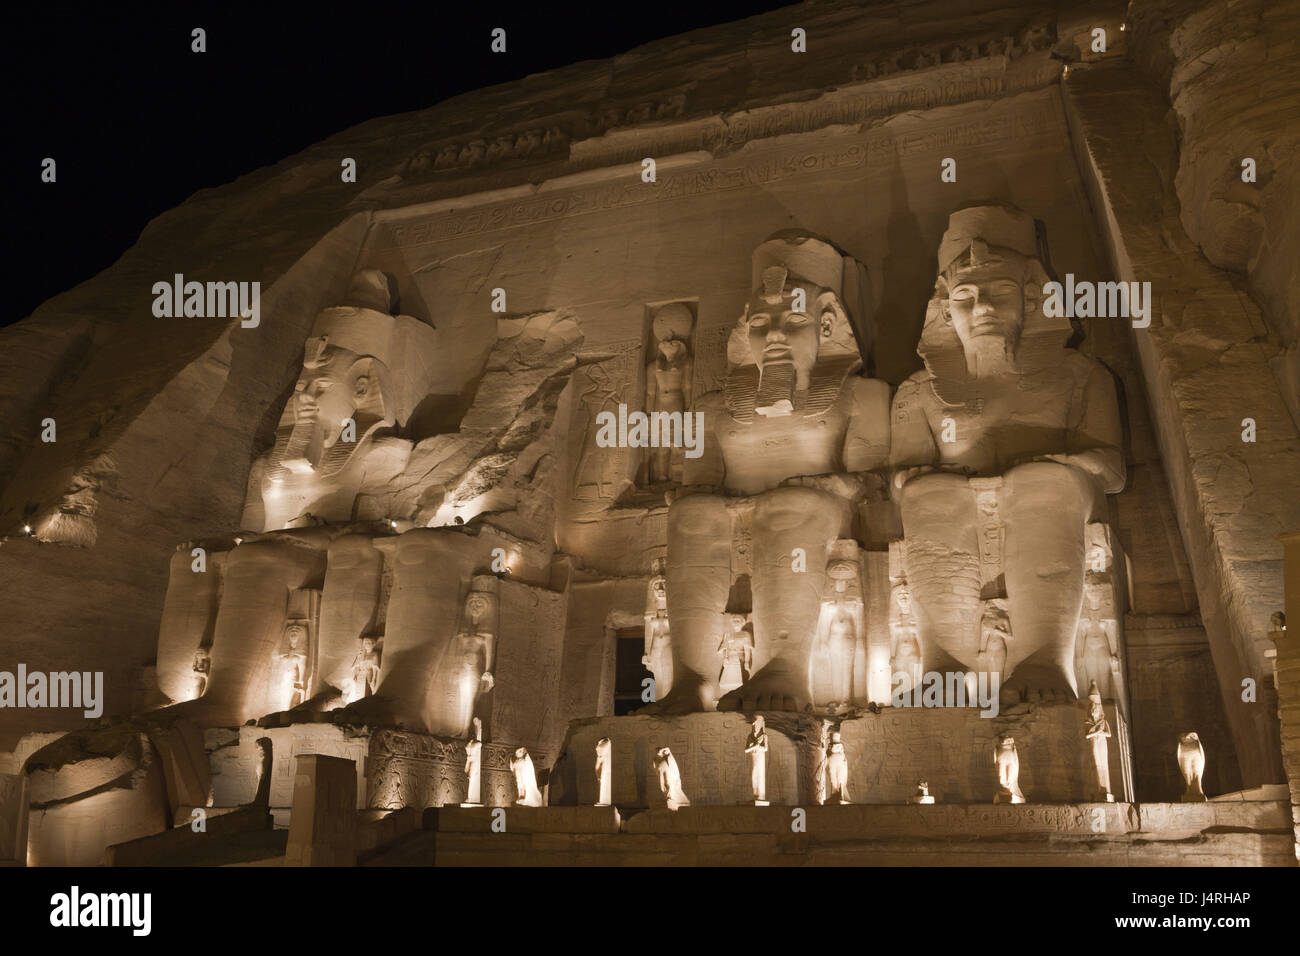 Big temple of Pharaoh Ramses II, illuminateds, Abu Simbel, Egypt, Stock Photo